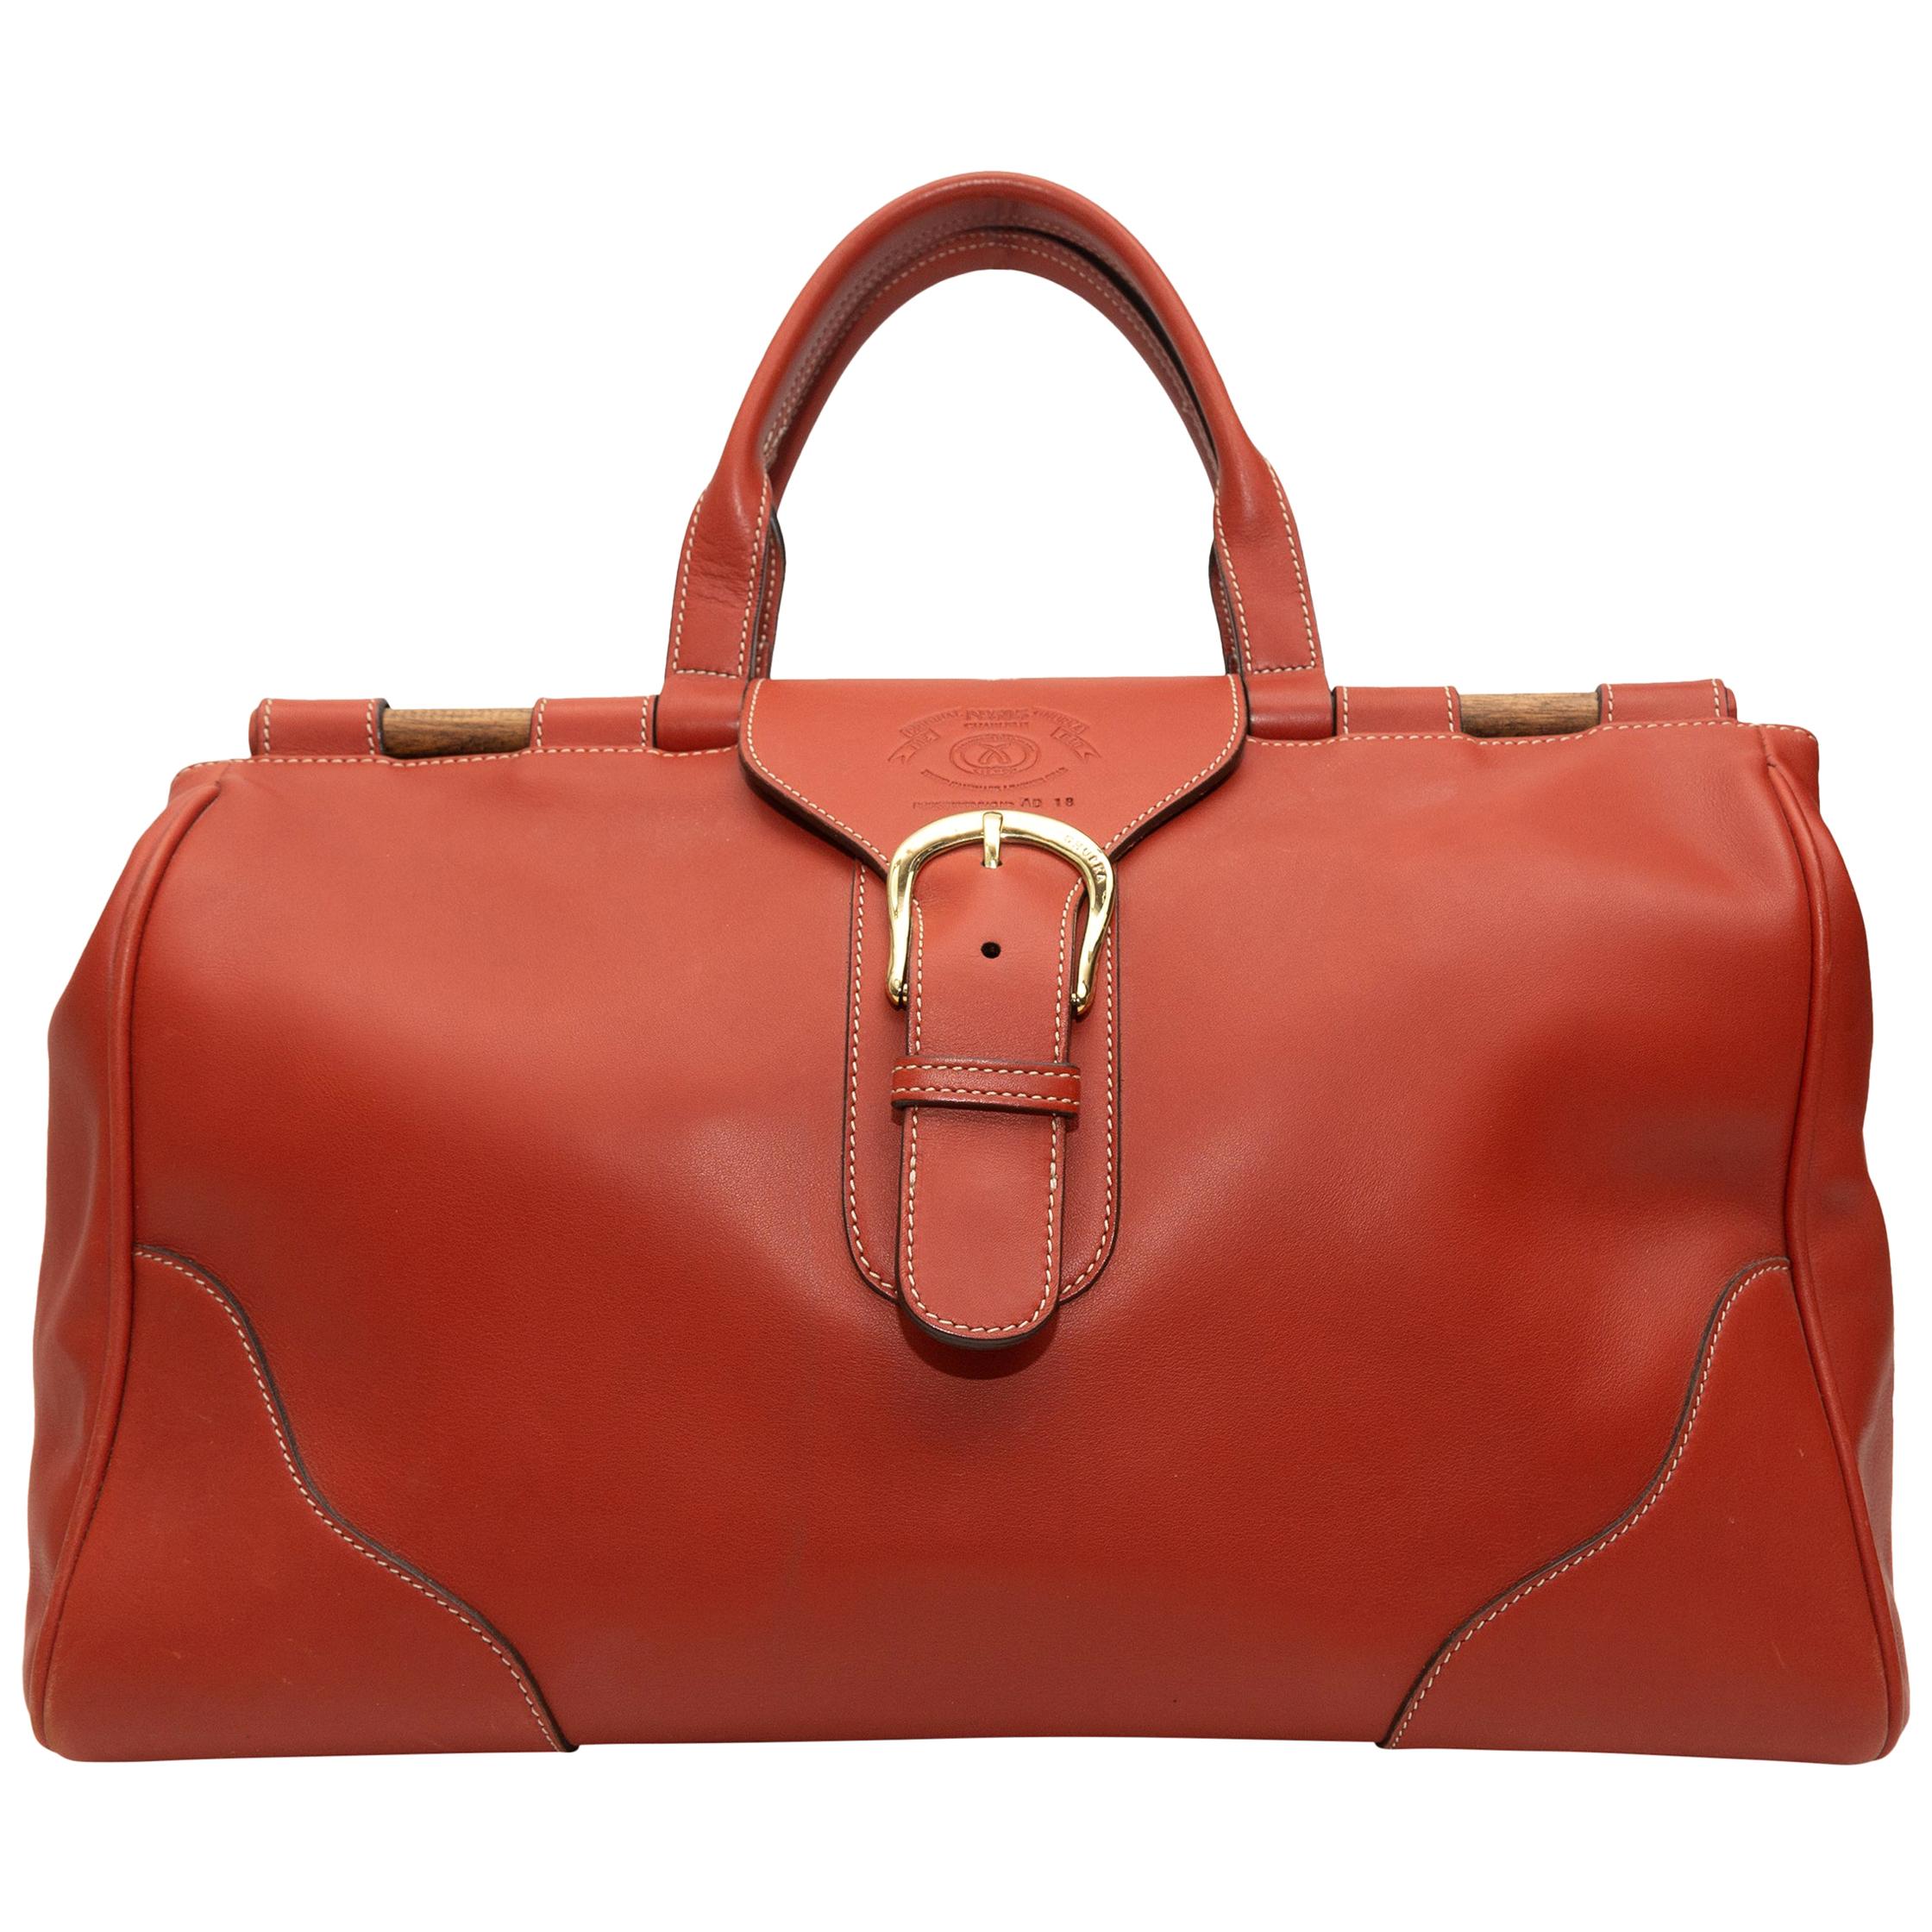 Ghurka Orange Large Leather Handbag